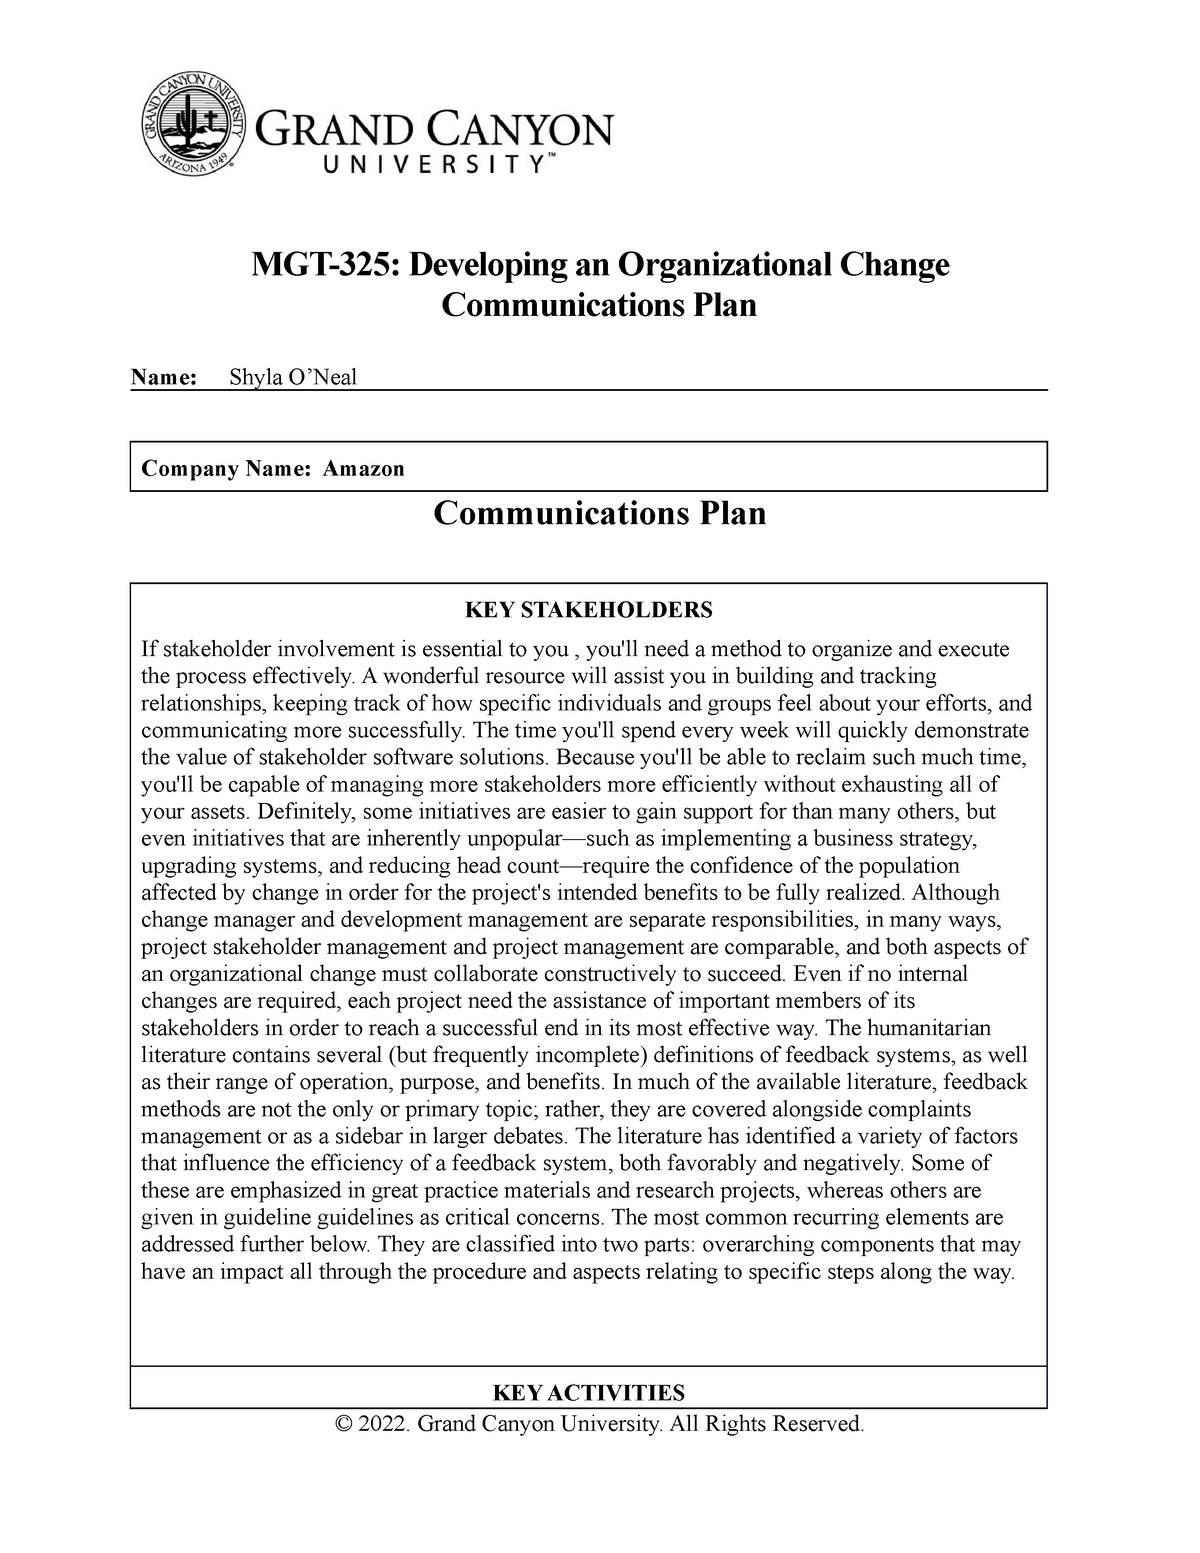 mgt 325 organizational change communications plan presentation